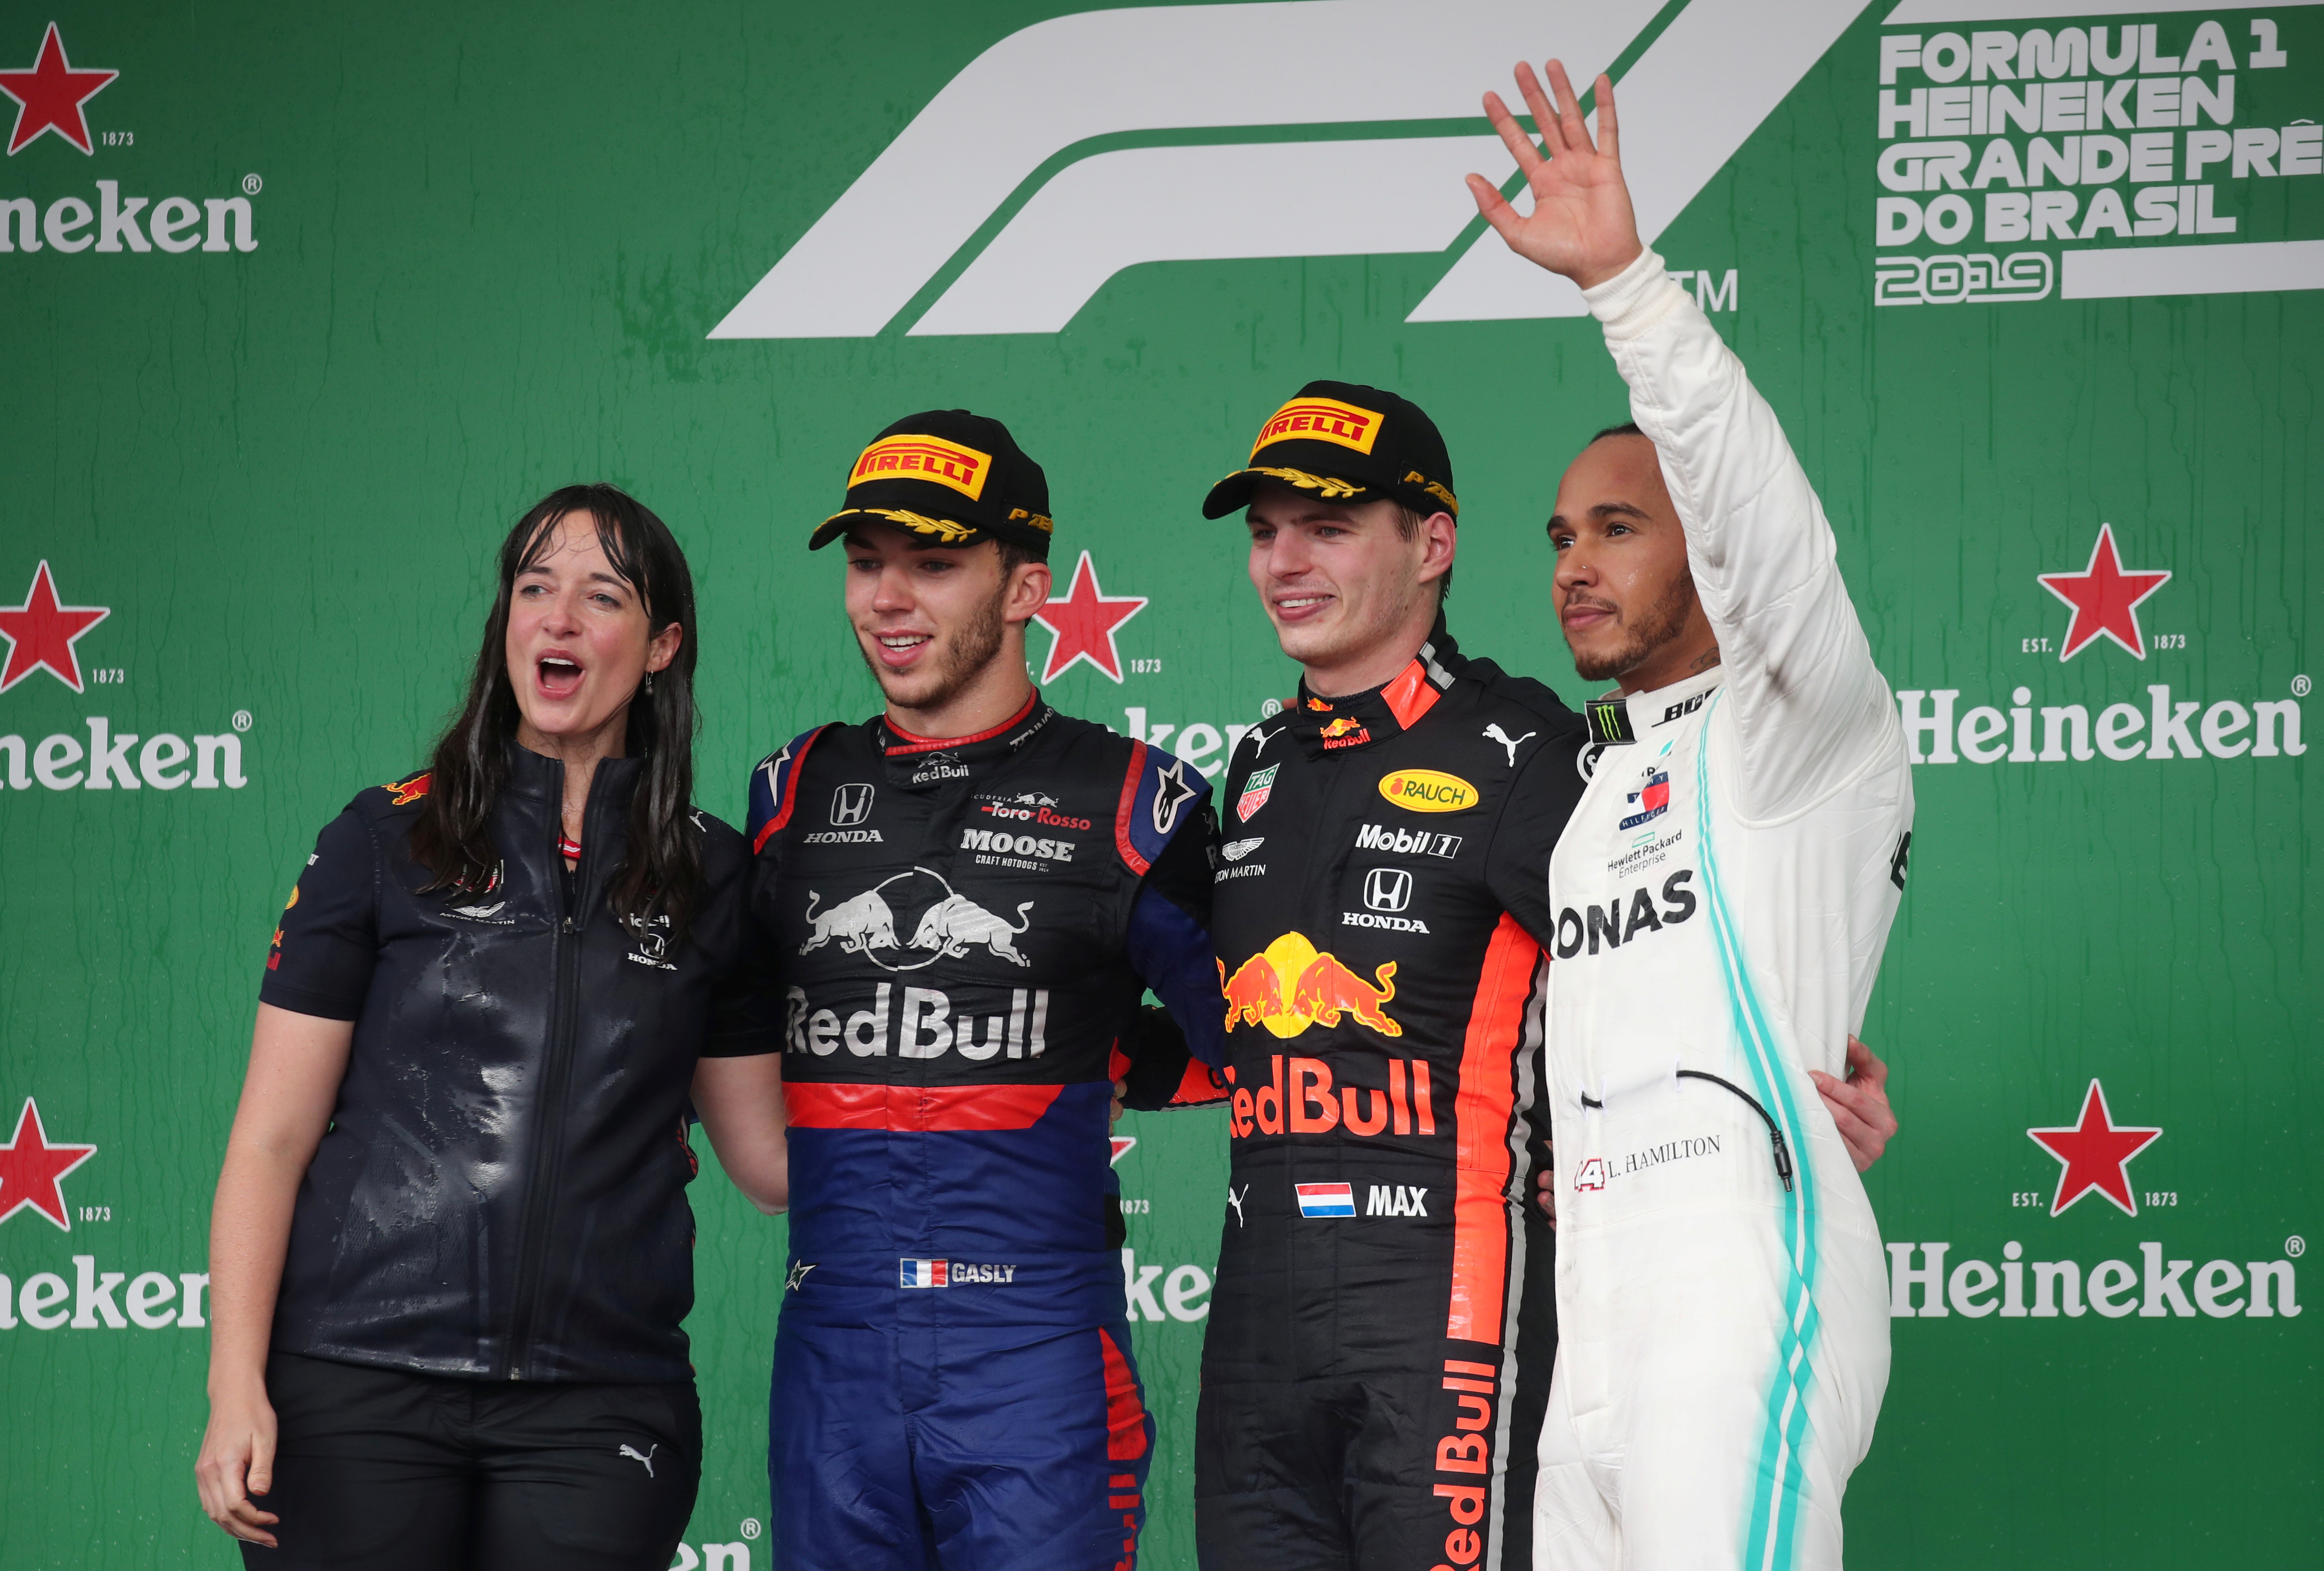 En el podio de Interlagos 2019 junto a Pierre Gasly, Max Verstappen y Lewis Hamilton, que luego fue recargado por un toque a Alex Albon (REUTERS/Ricardo Moraes)